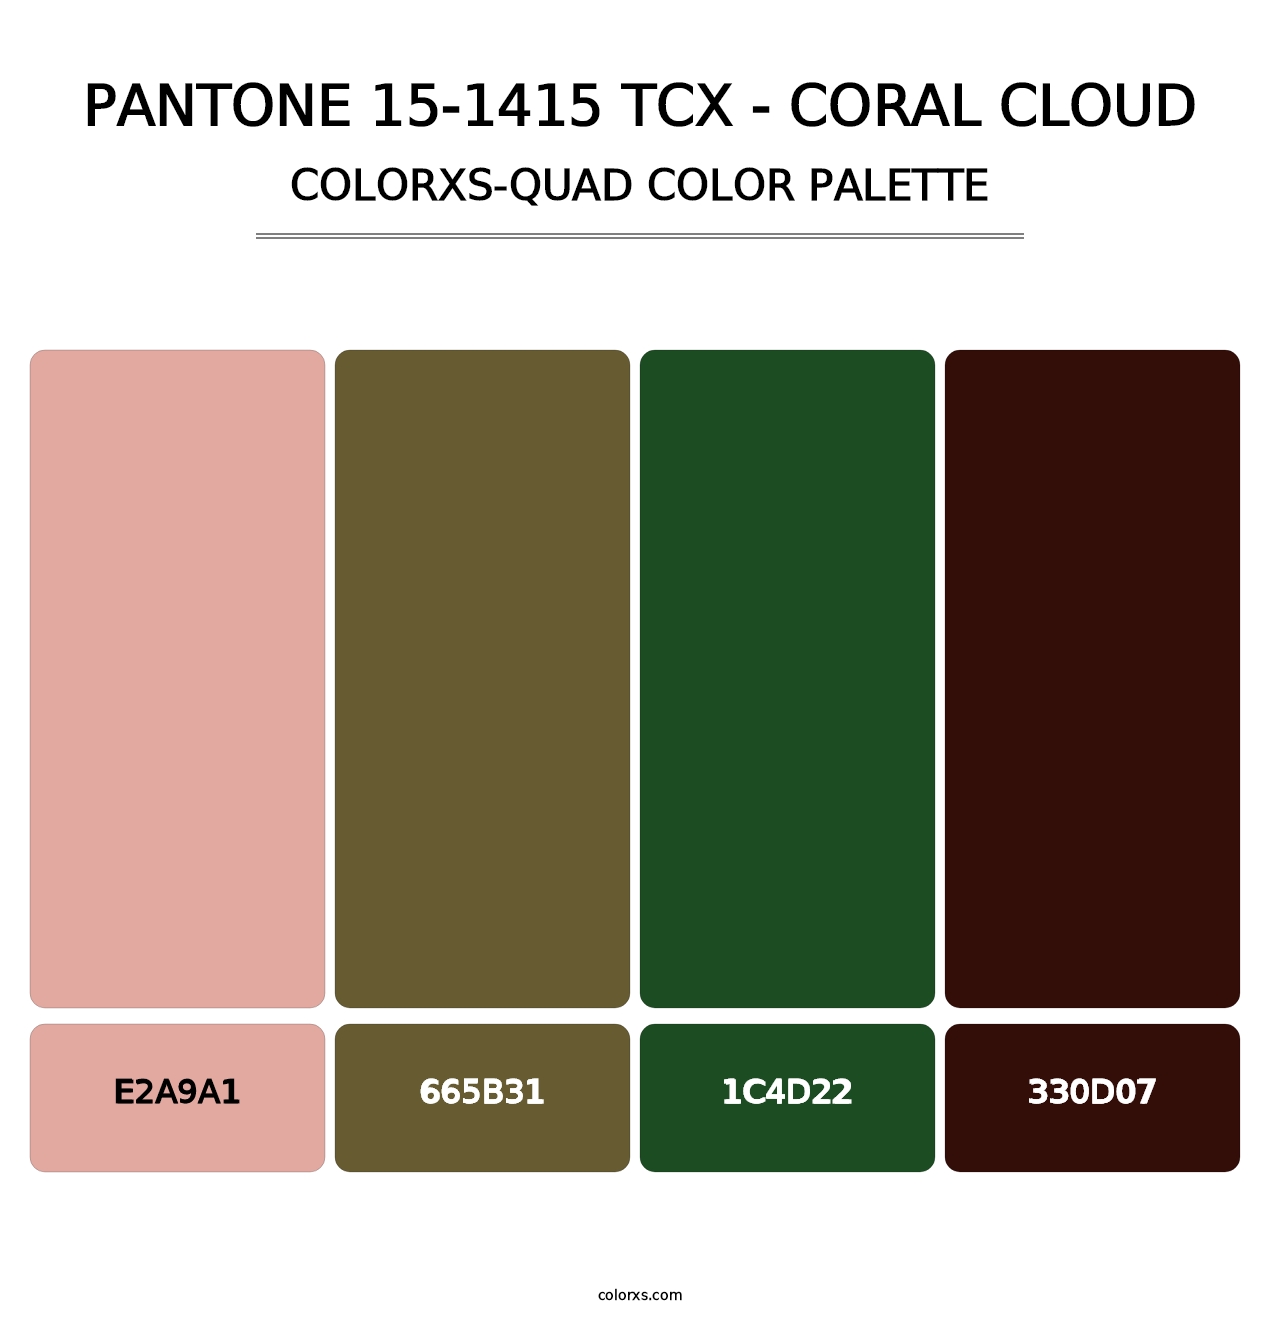 PANTONE 15-1415 TCX - Coral Cloud - Colorxs Quad Palette